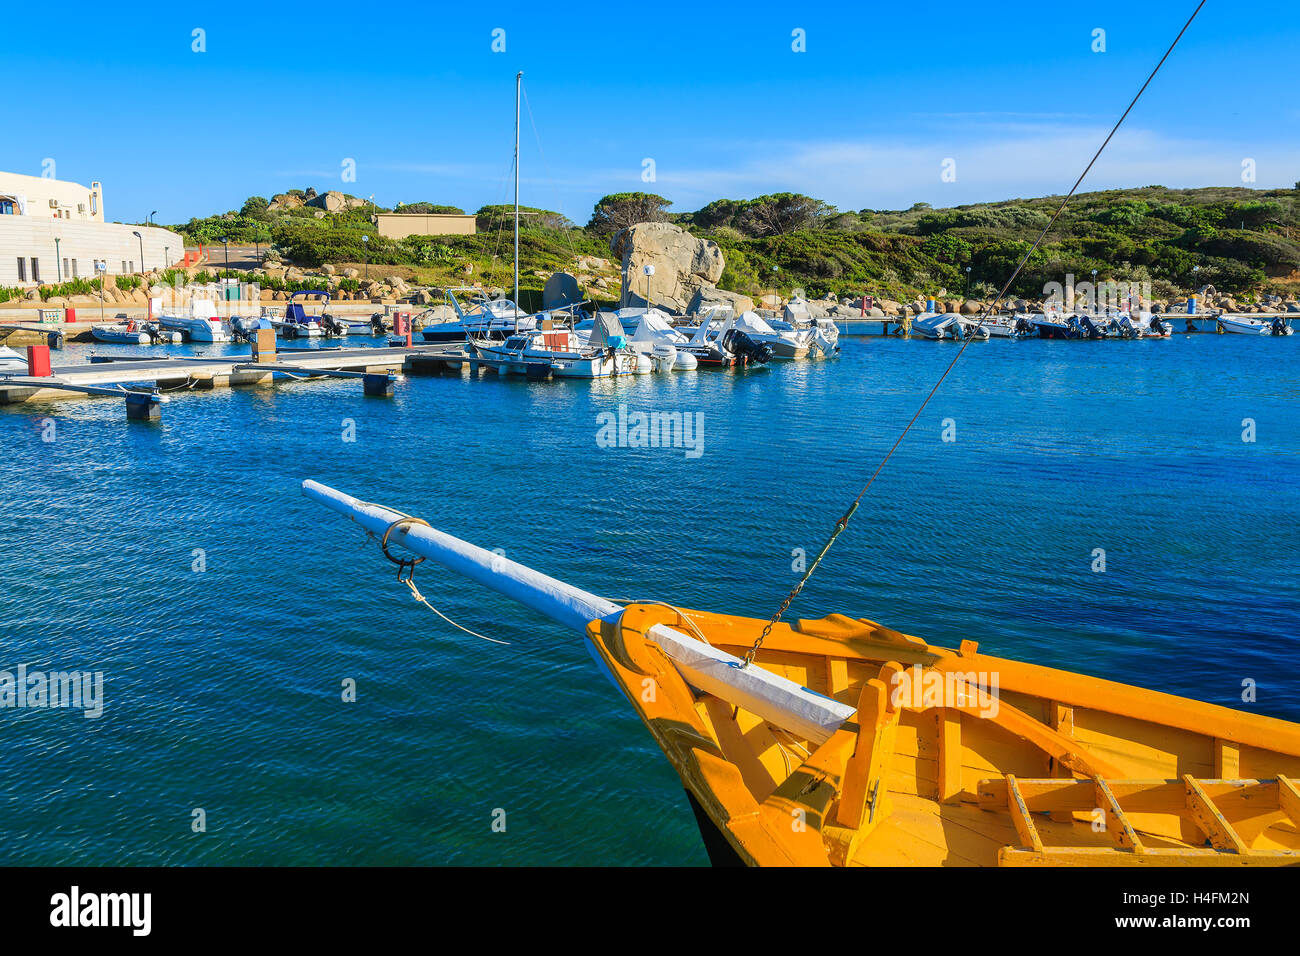 Der Hafen PORTO GIUNCO, Sardinien - 27. Mai 2014: Angelboot/Fischerboot im Hafen von Porto Giunco festmachen. Viele Fischer hier Boote ankern und verkaufen frischen Fisch zu den Restaurants am Hafen. Stockfoto